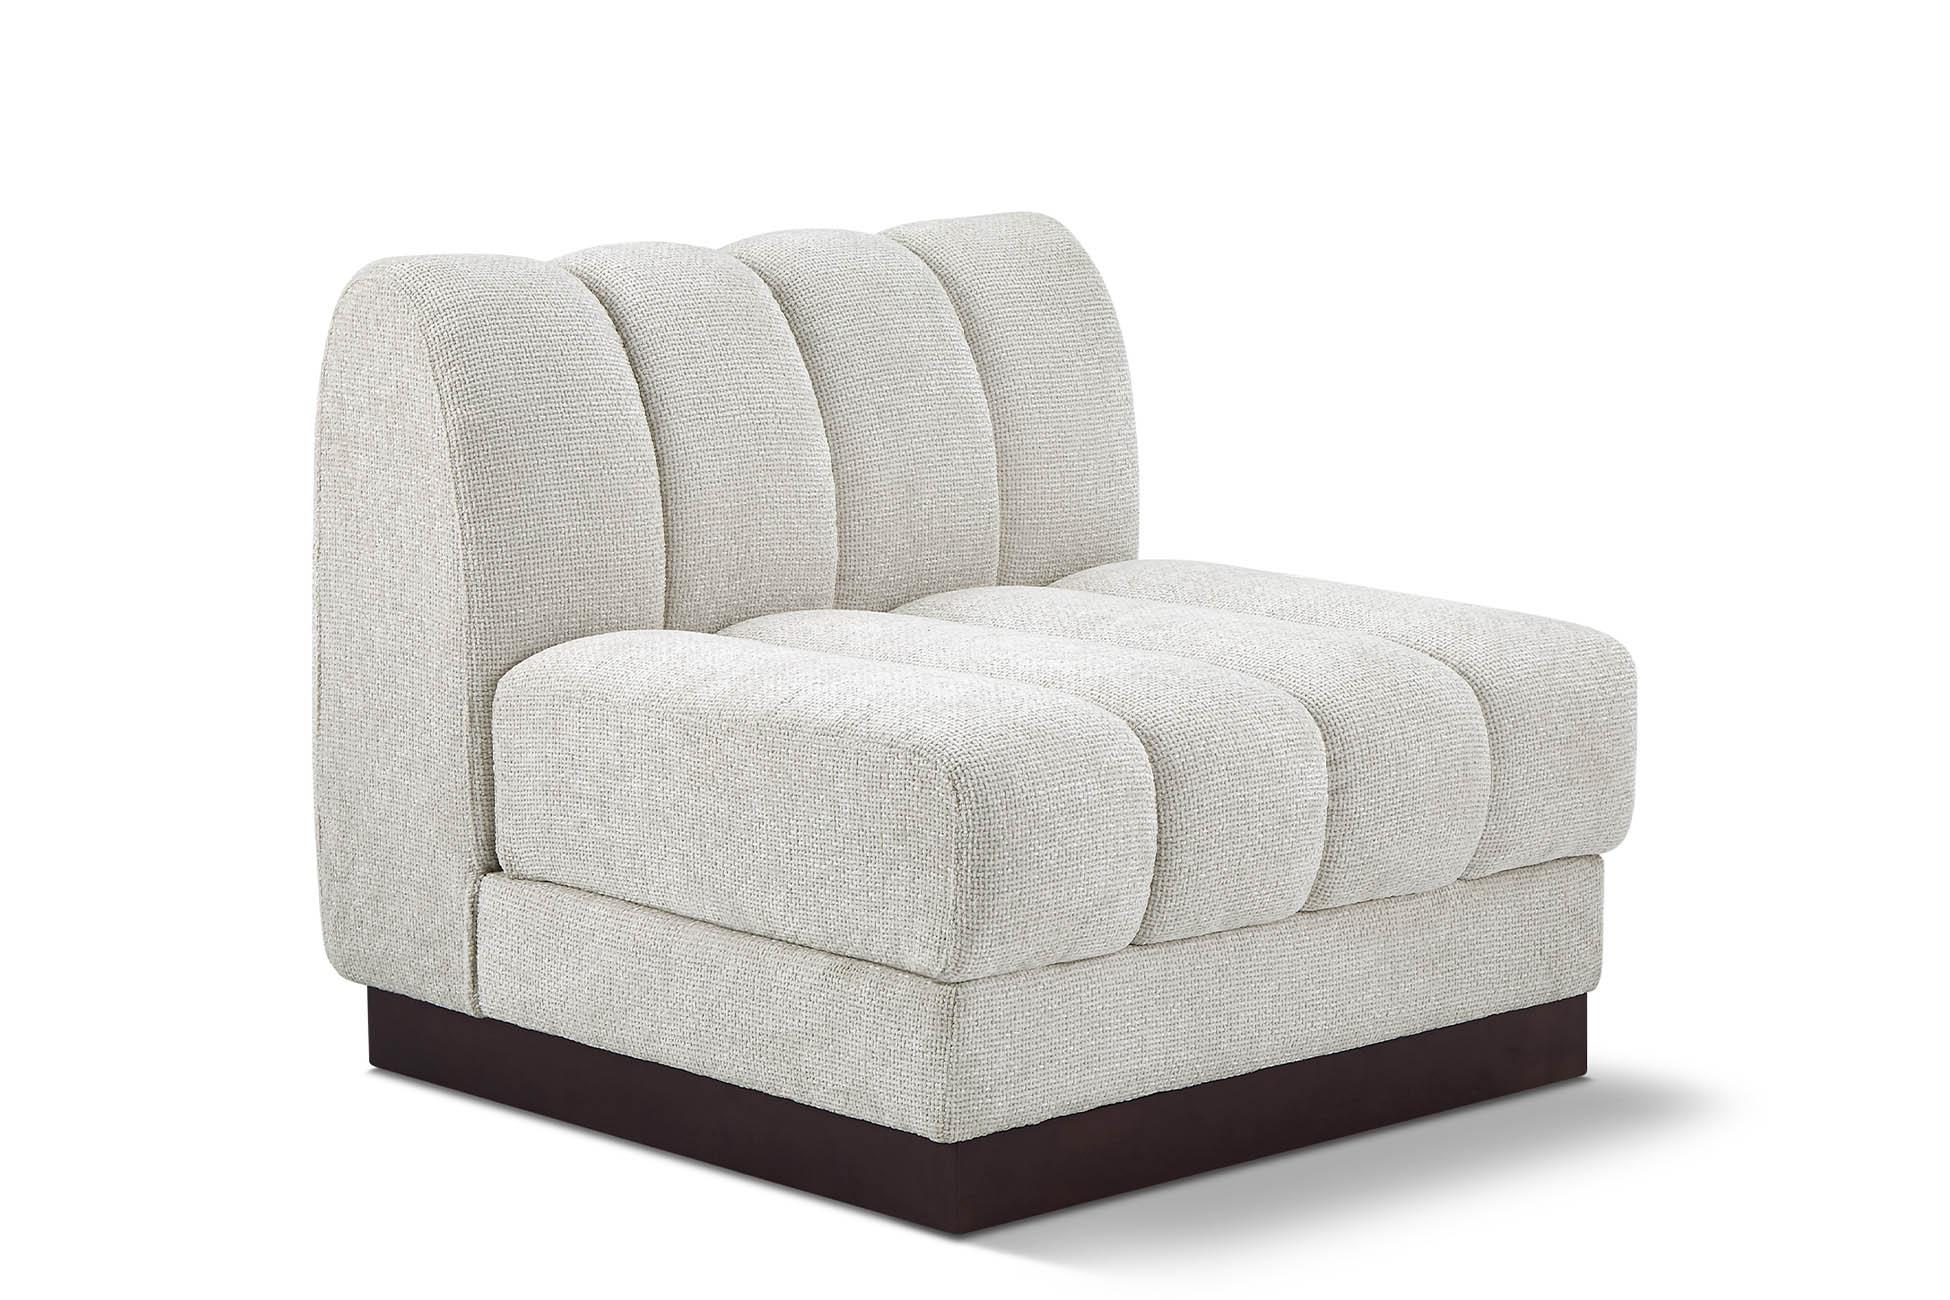 Contemporary, Modern Armless Chair QUINN 124Cream-Armless 124Cream-Armless in Cream Chenille